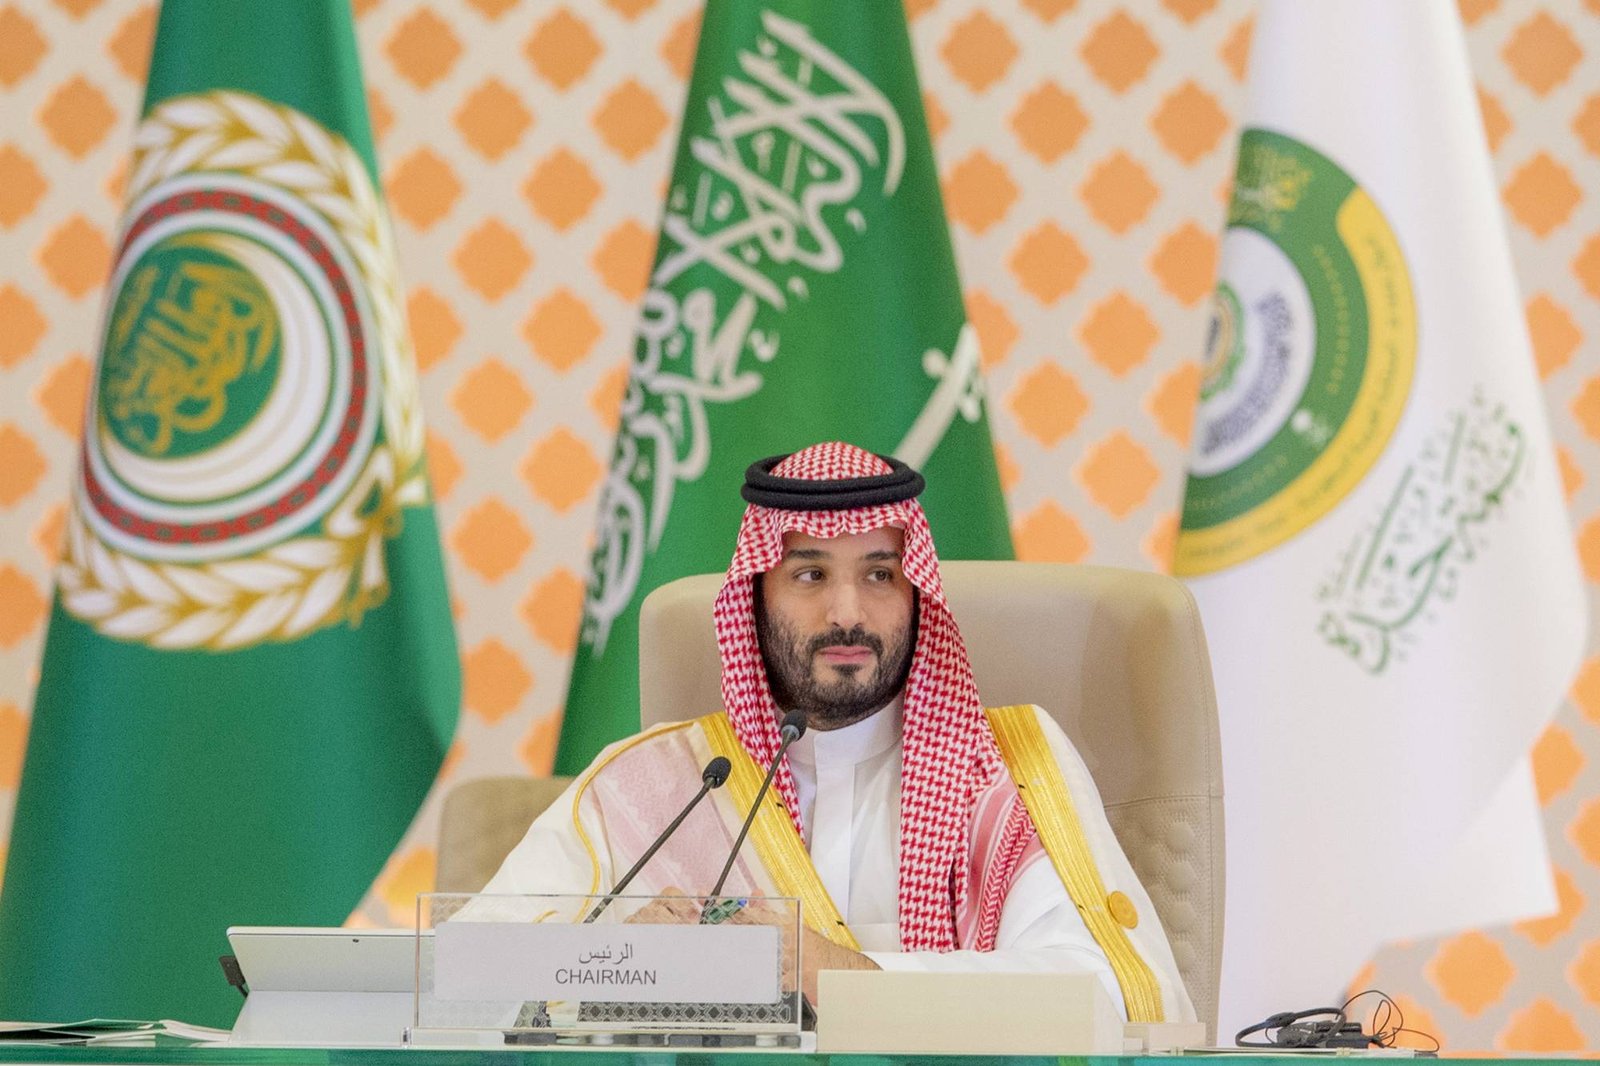 ولي العهد السعودي يطلق شركة اردارا وباكورة مشاريعها الوادي 2023